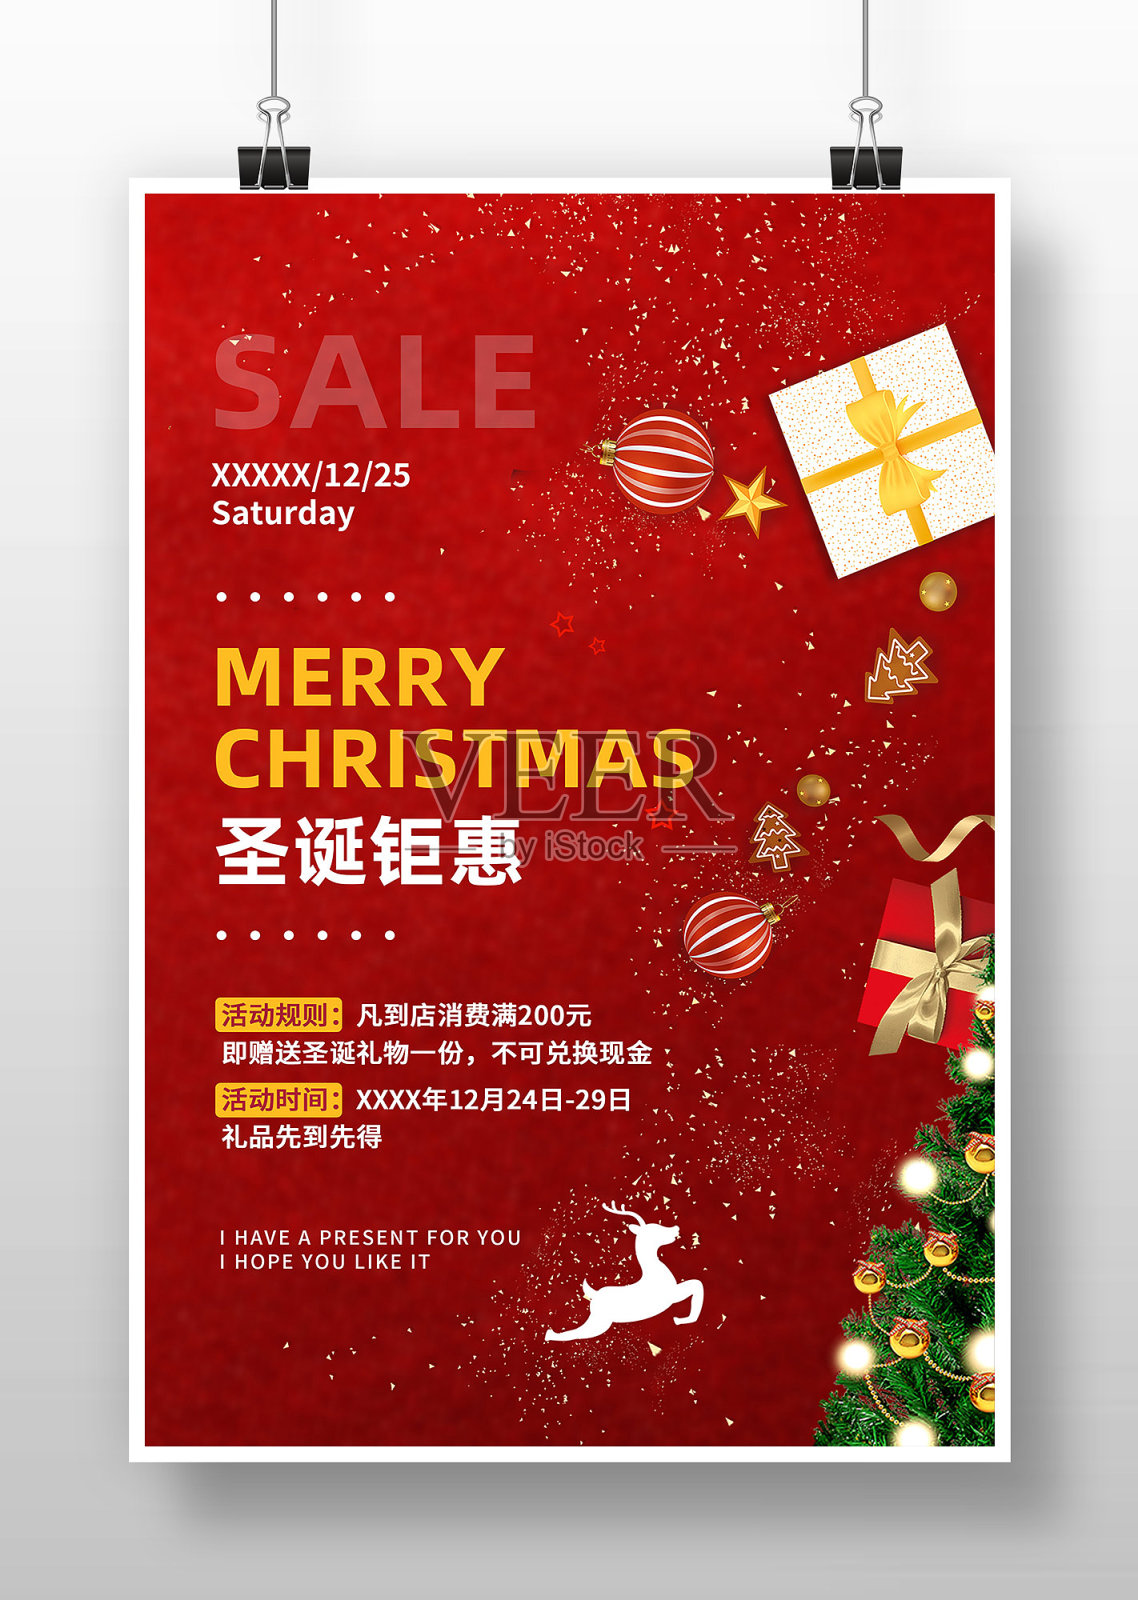 简约大气圣诞节促销广告海报设计模板素材